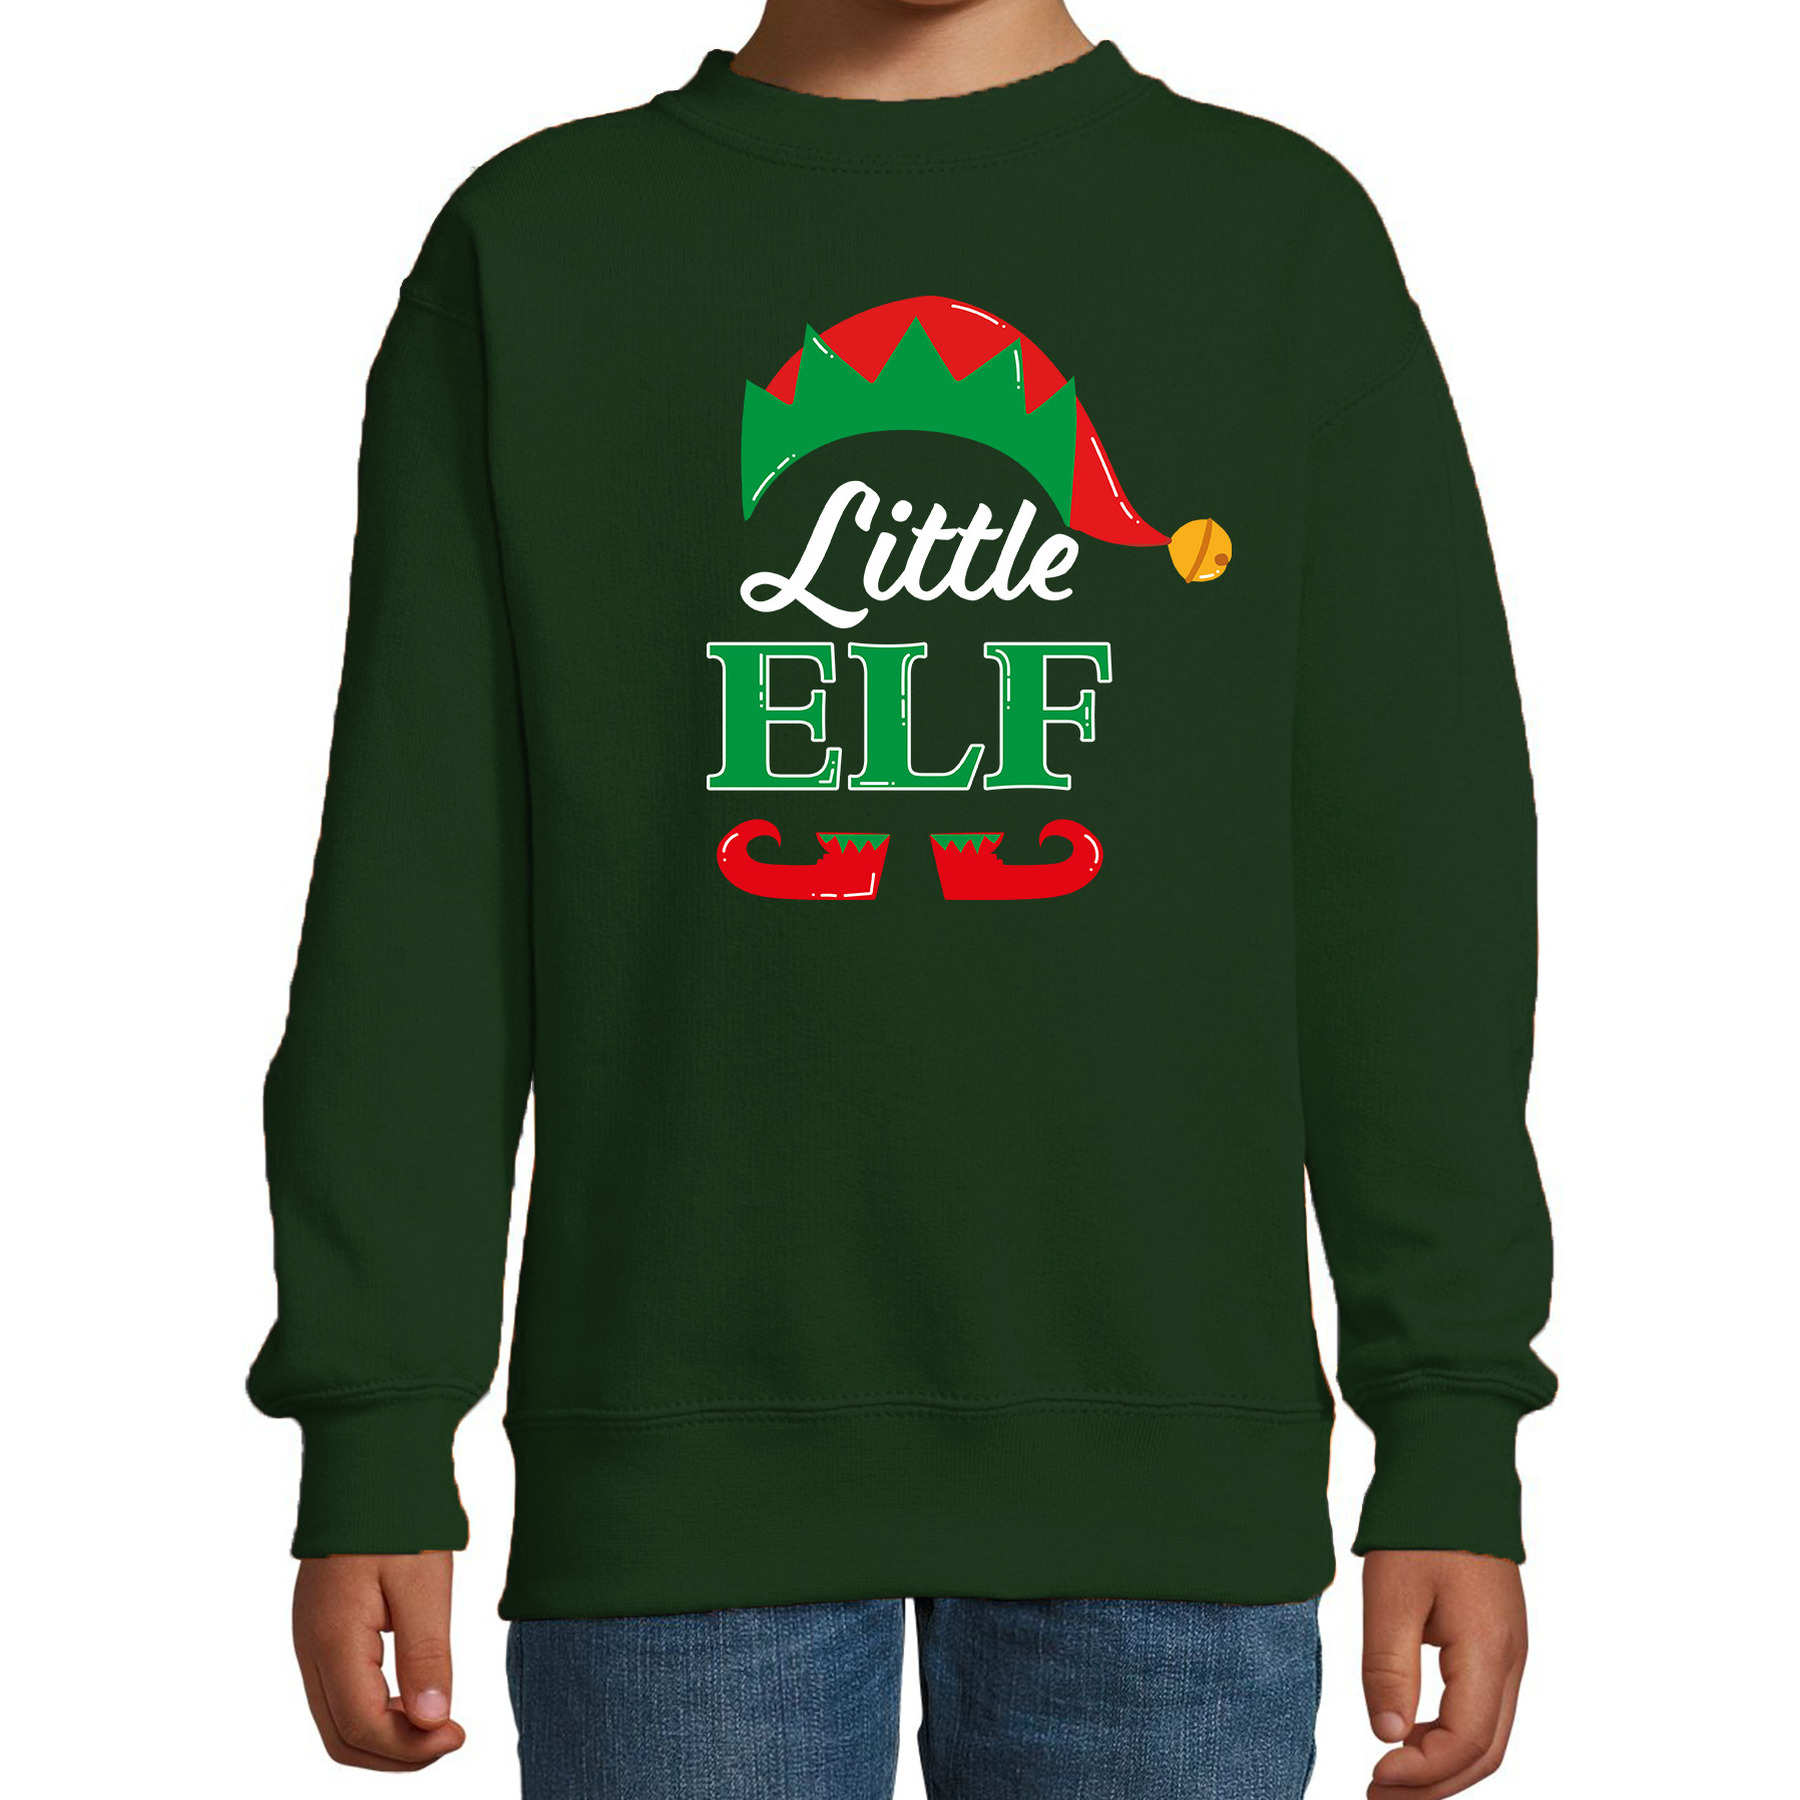 Little elf Kerstsweater-Kersttrui groen voor kinderen